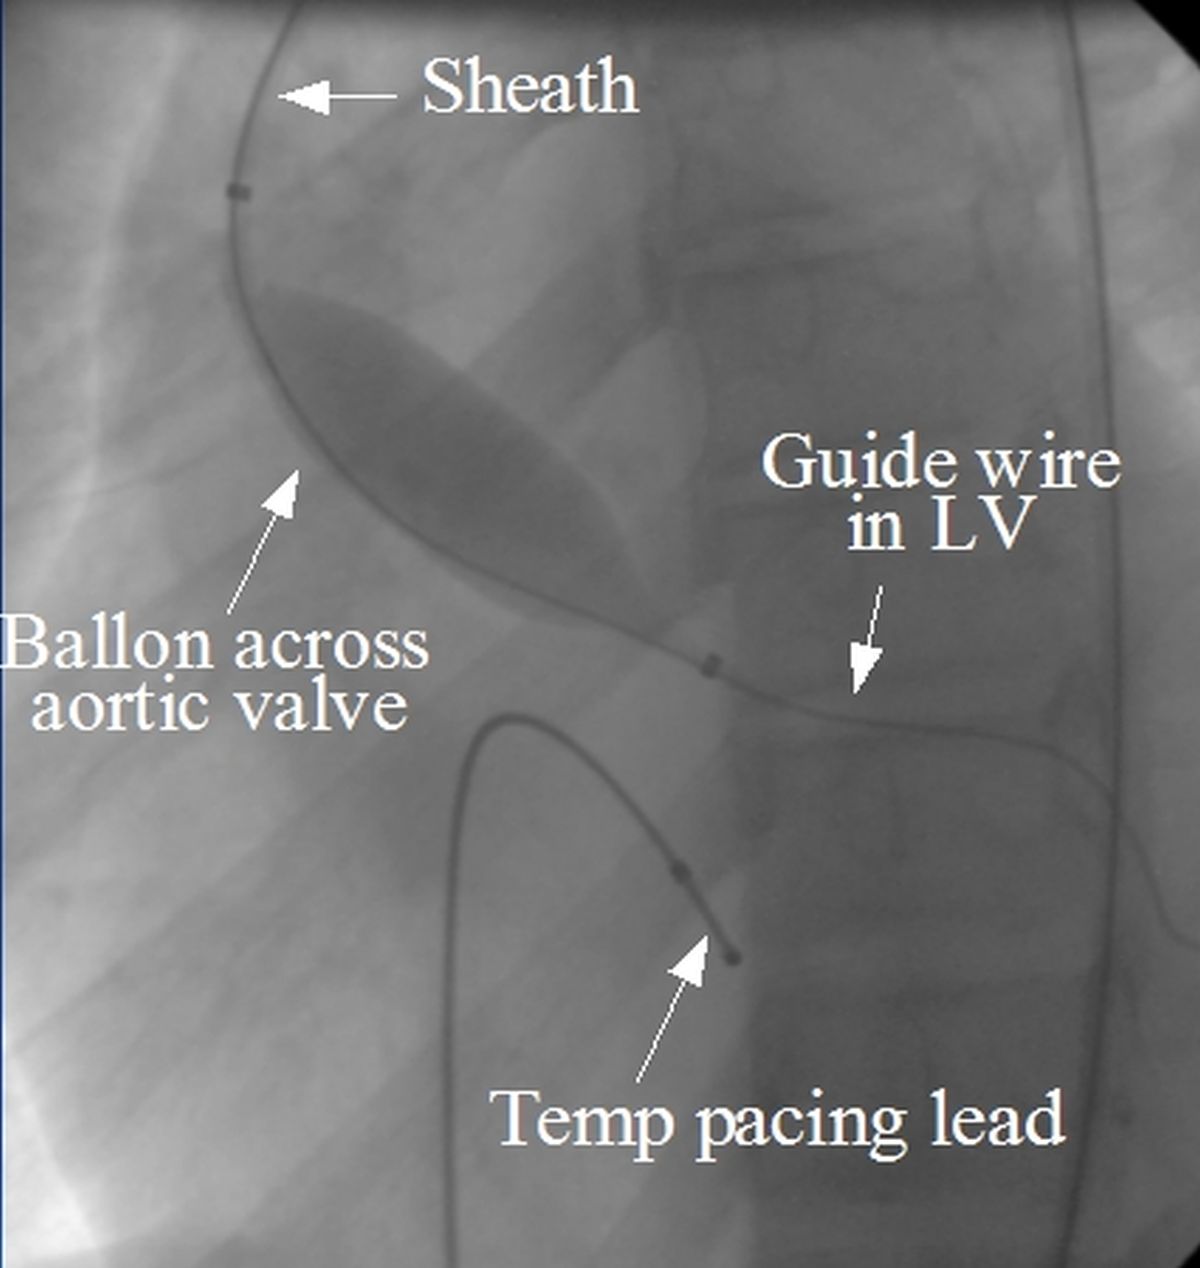 Balloon aortic valvuloplasty